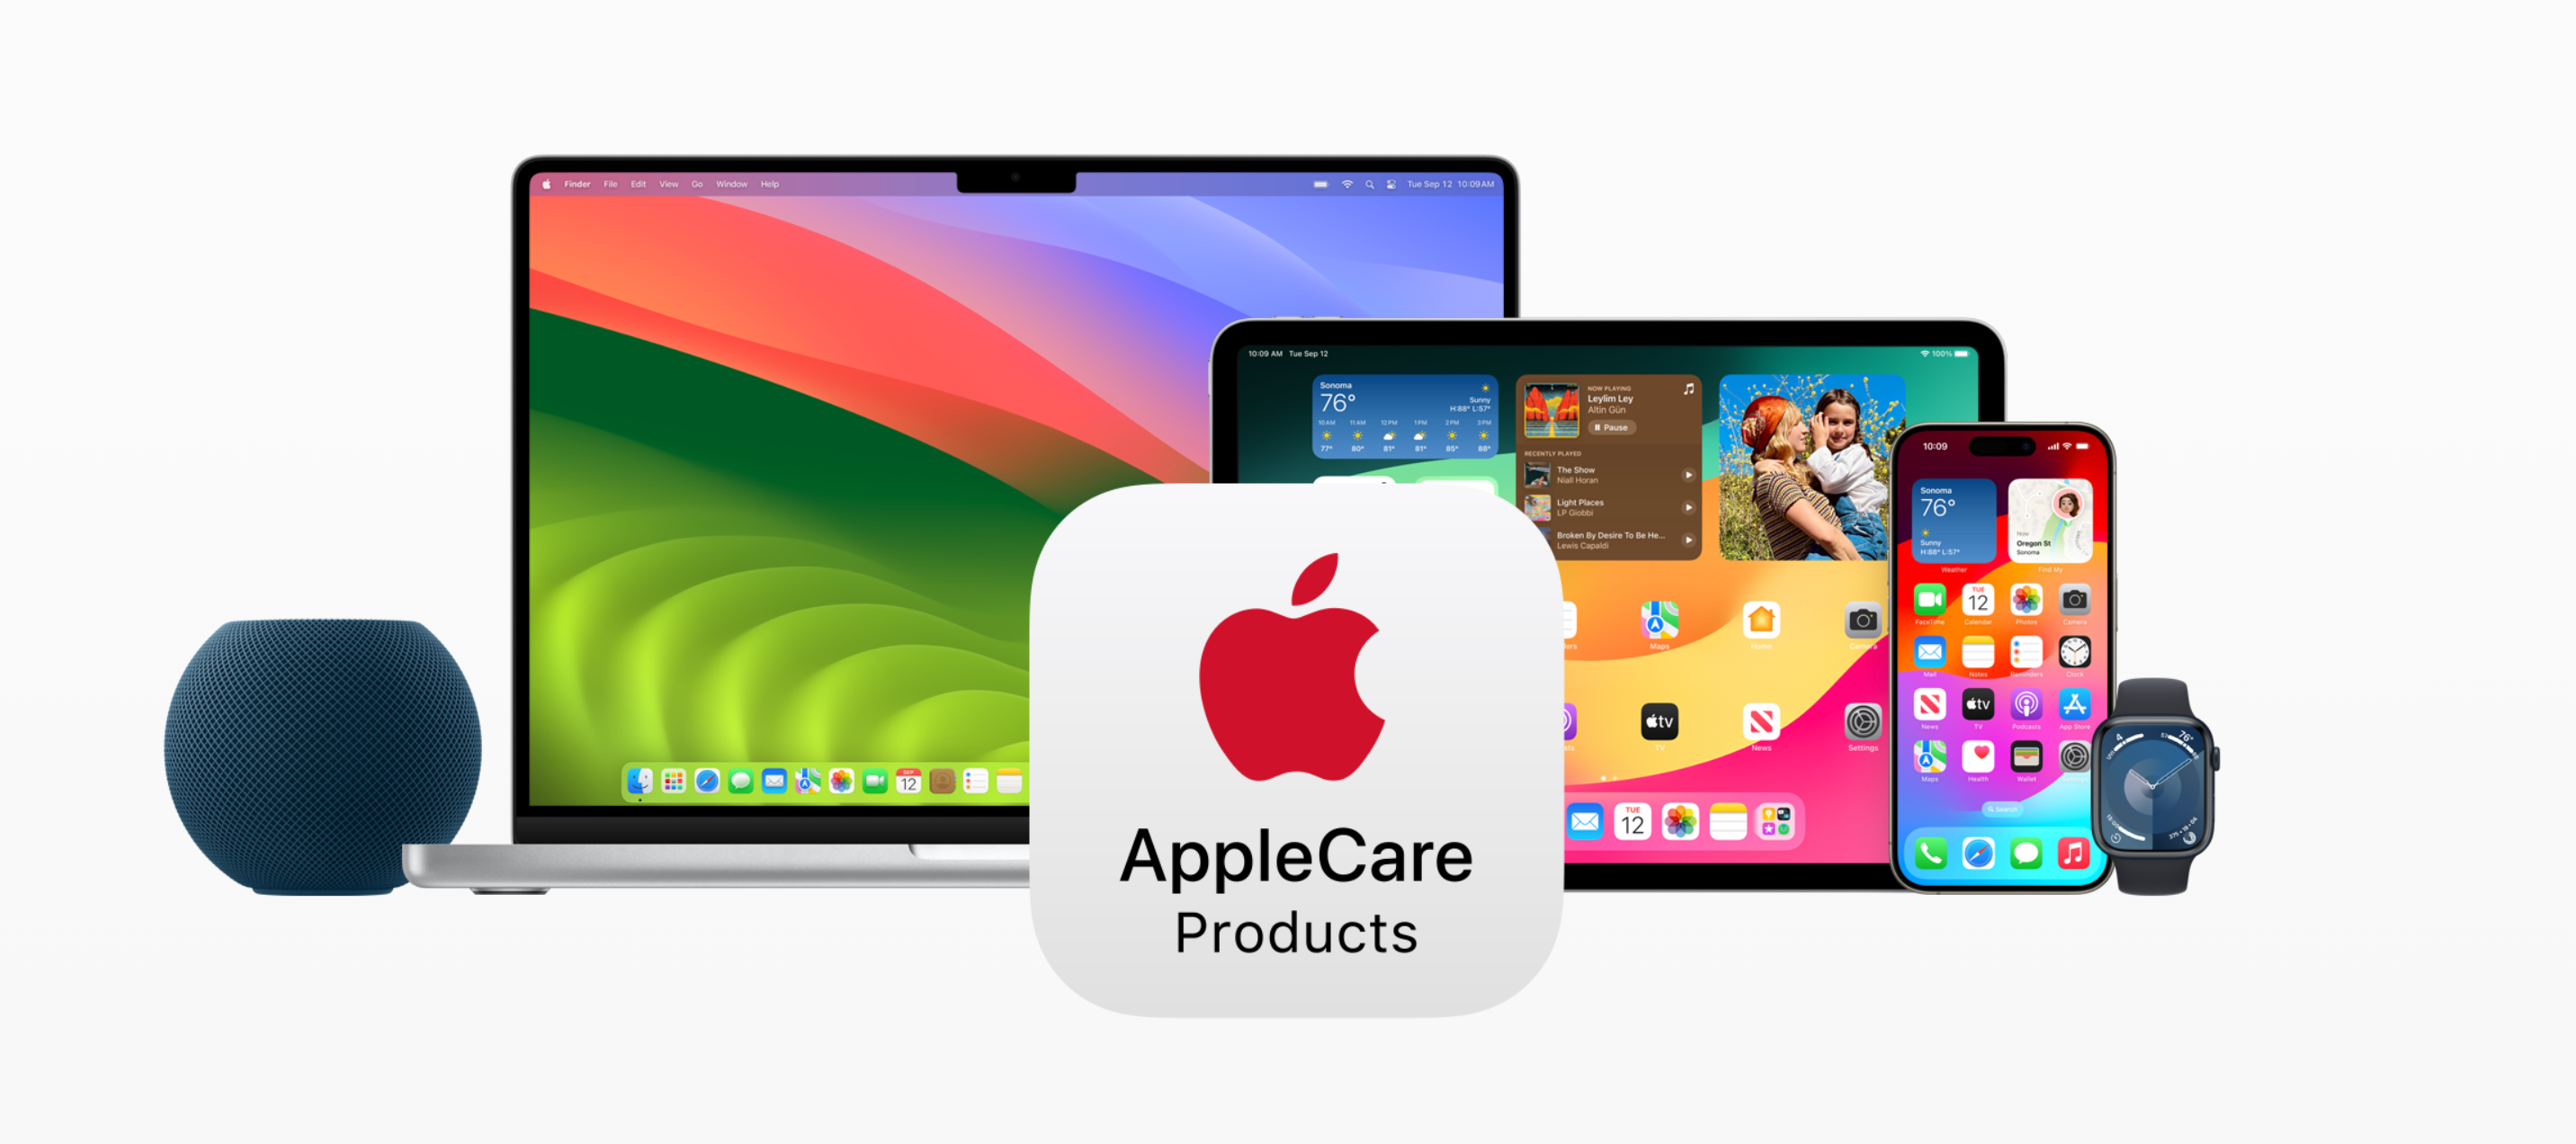 Διαφήμιση της Apple που παρουσιάζει τη γκάμα προϊόντων που είναι συμβατά με AppleCare, συμπεριλαμβανομένων των HomePod, Mac, iPad, Apple Watch και iPhone